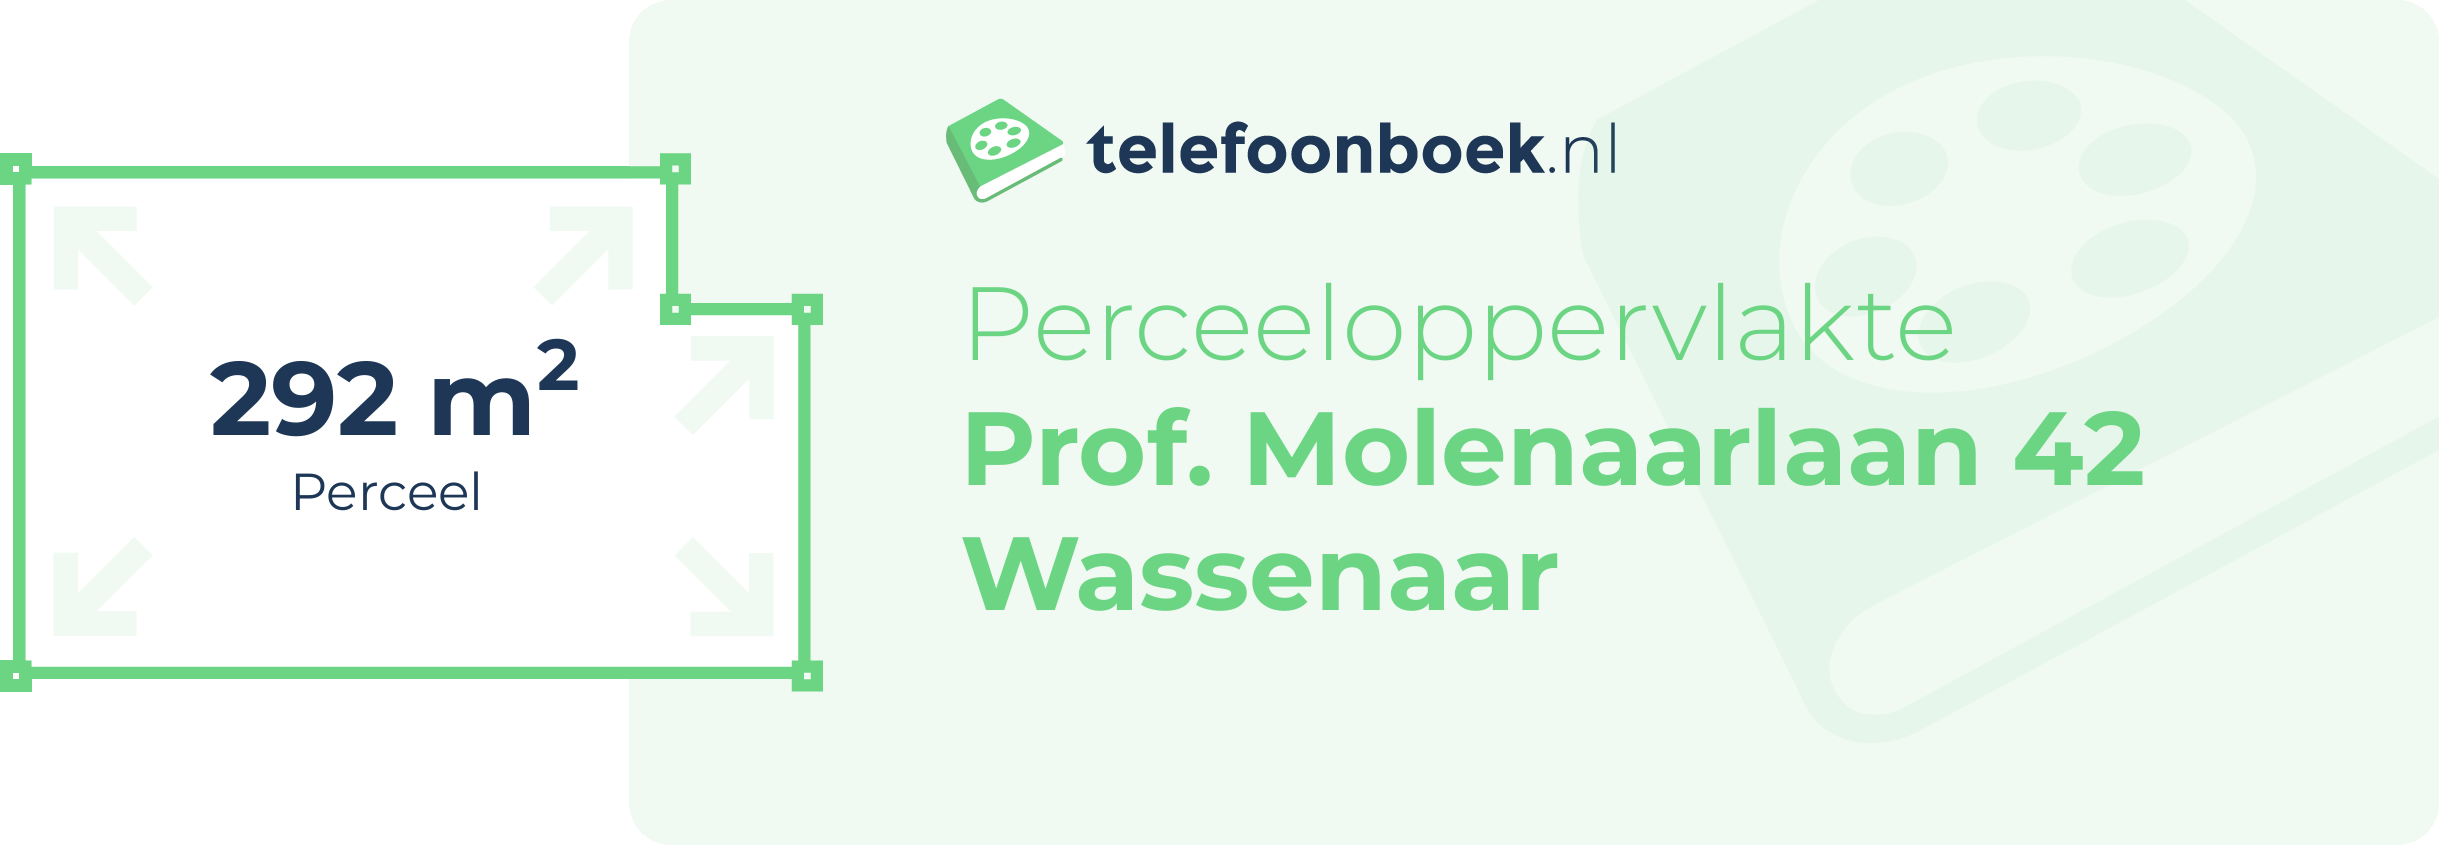 Perceeloppervlakte Prof. Molenaarlaan 42 Wassenaar